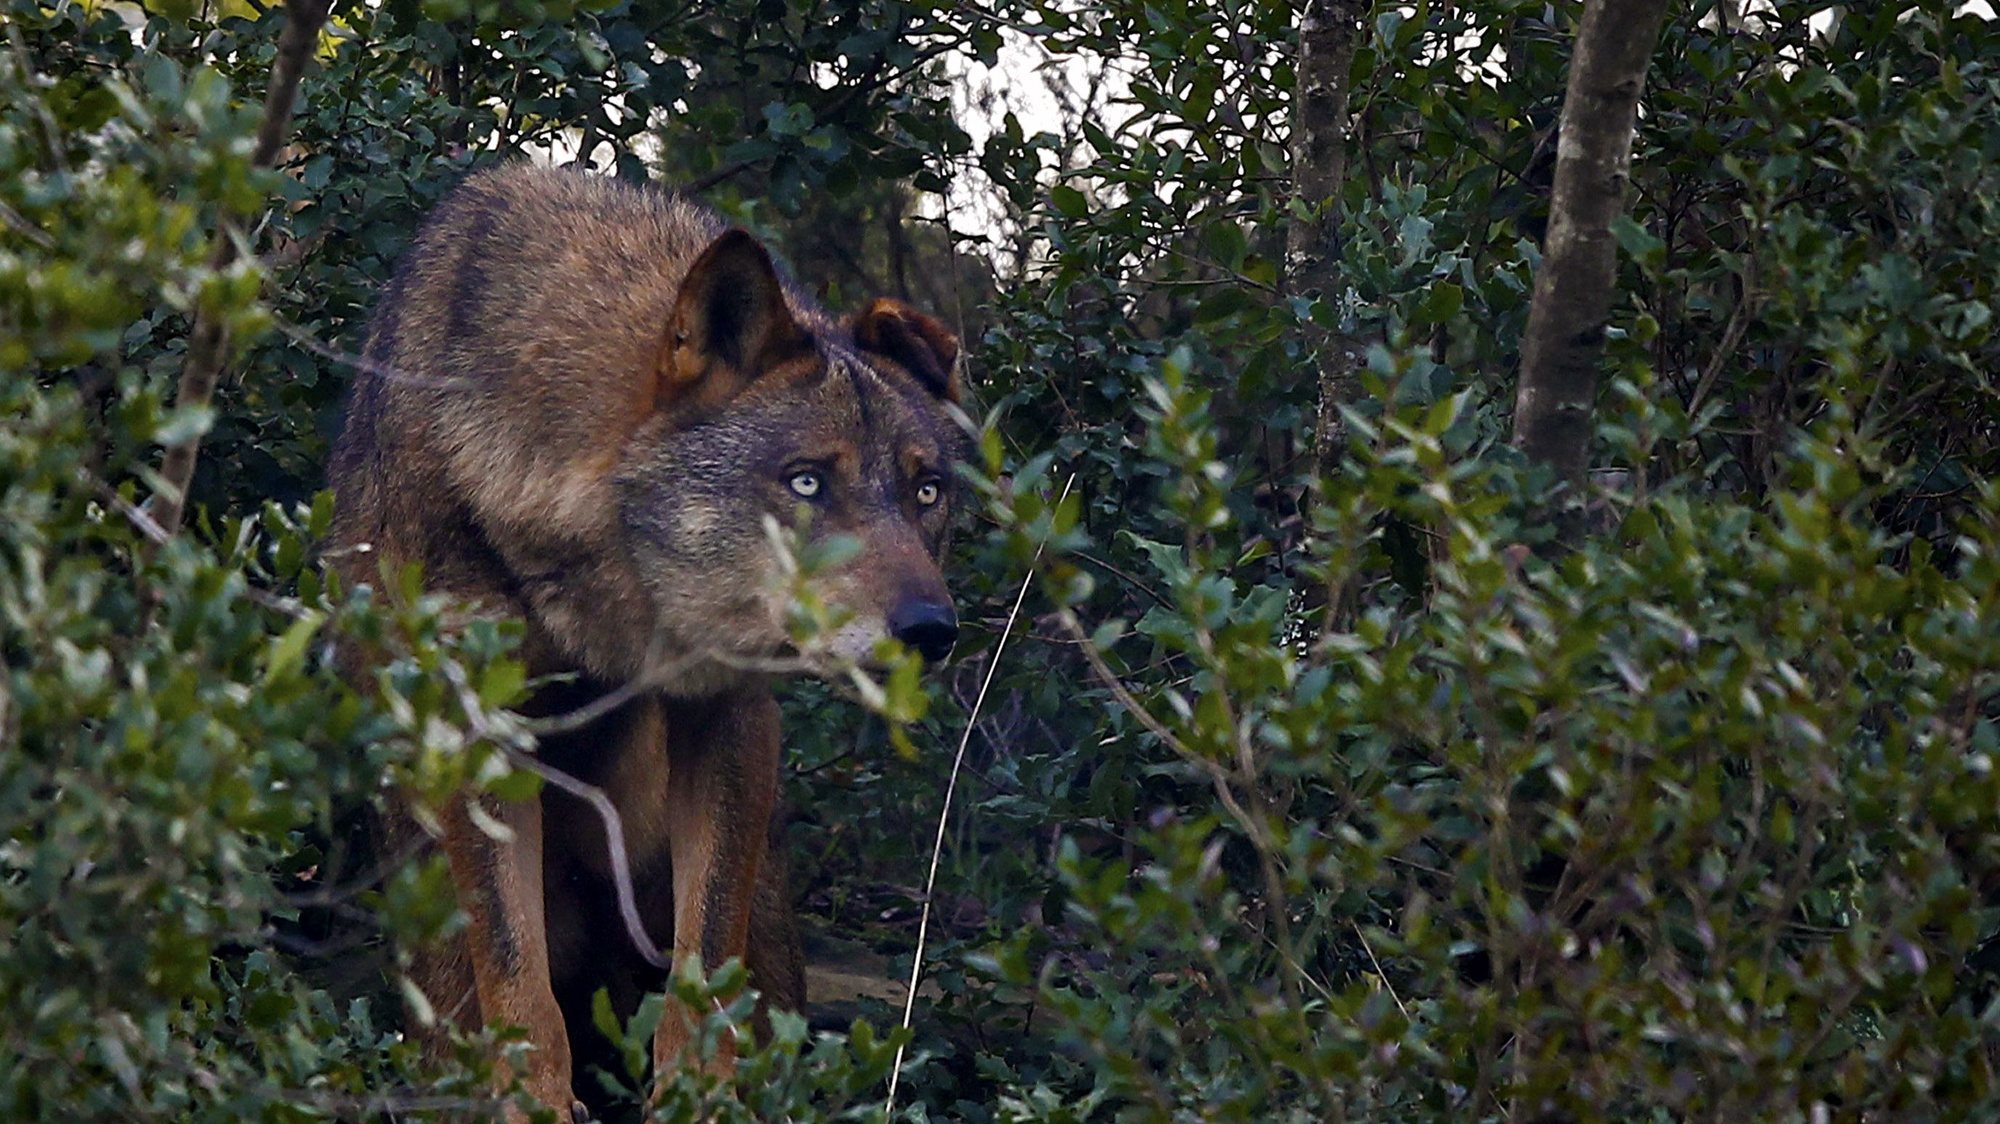 Faia é já considerada a principal atração do Centro de Recuperação do Lobo Ibérico (CRLI), que necessita de donativos para preservar a espécie, Mafra, 11 dezembro 2011. (ACOMPANHA TEXTO)  JOSE SENA GOULAO  / LUSA